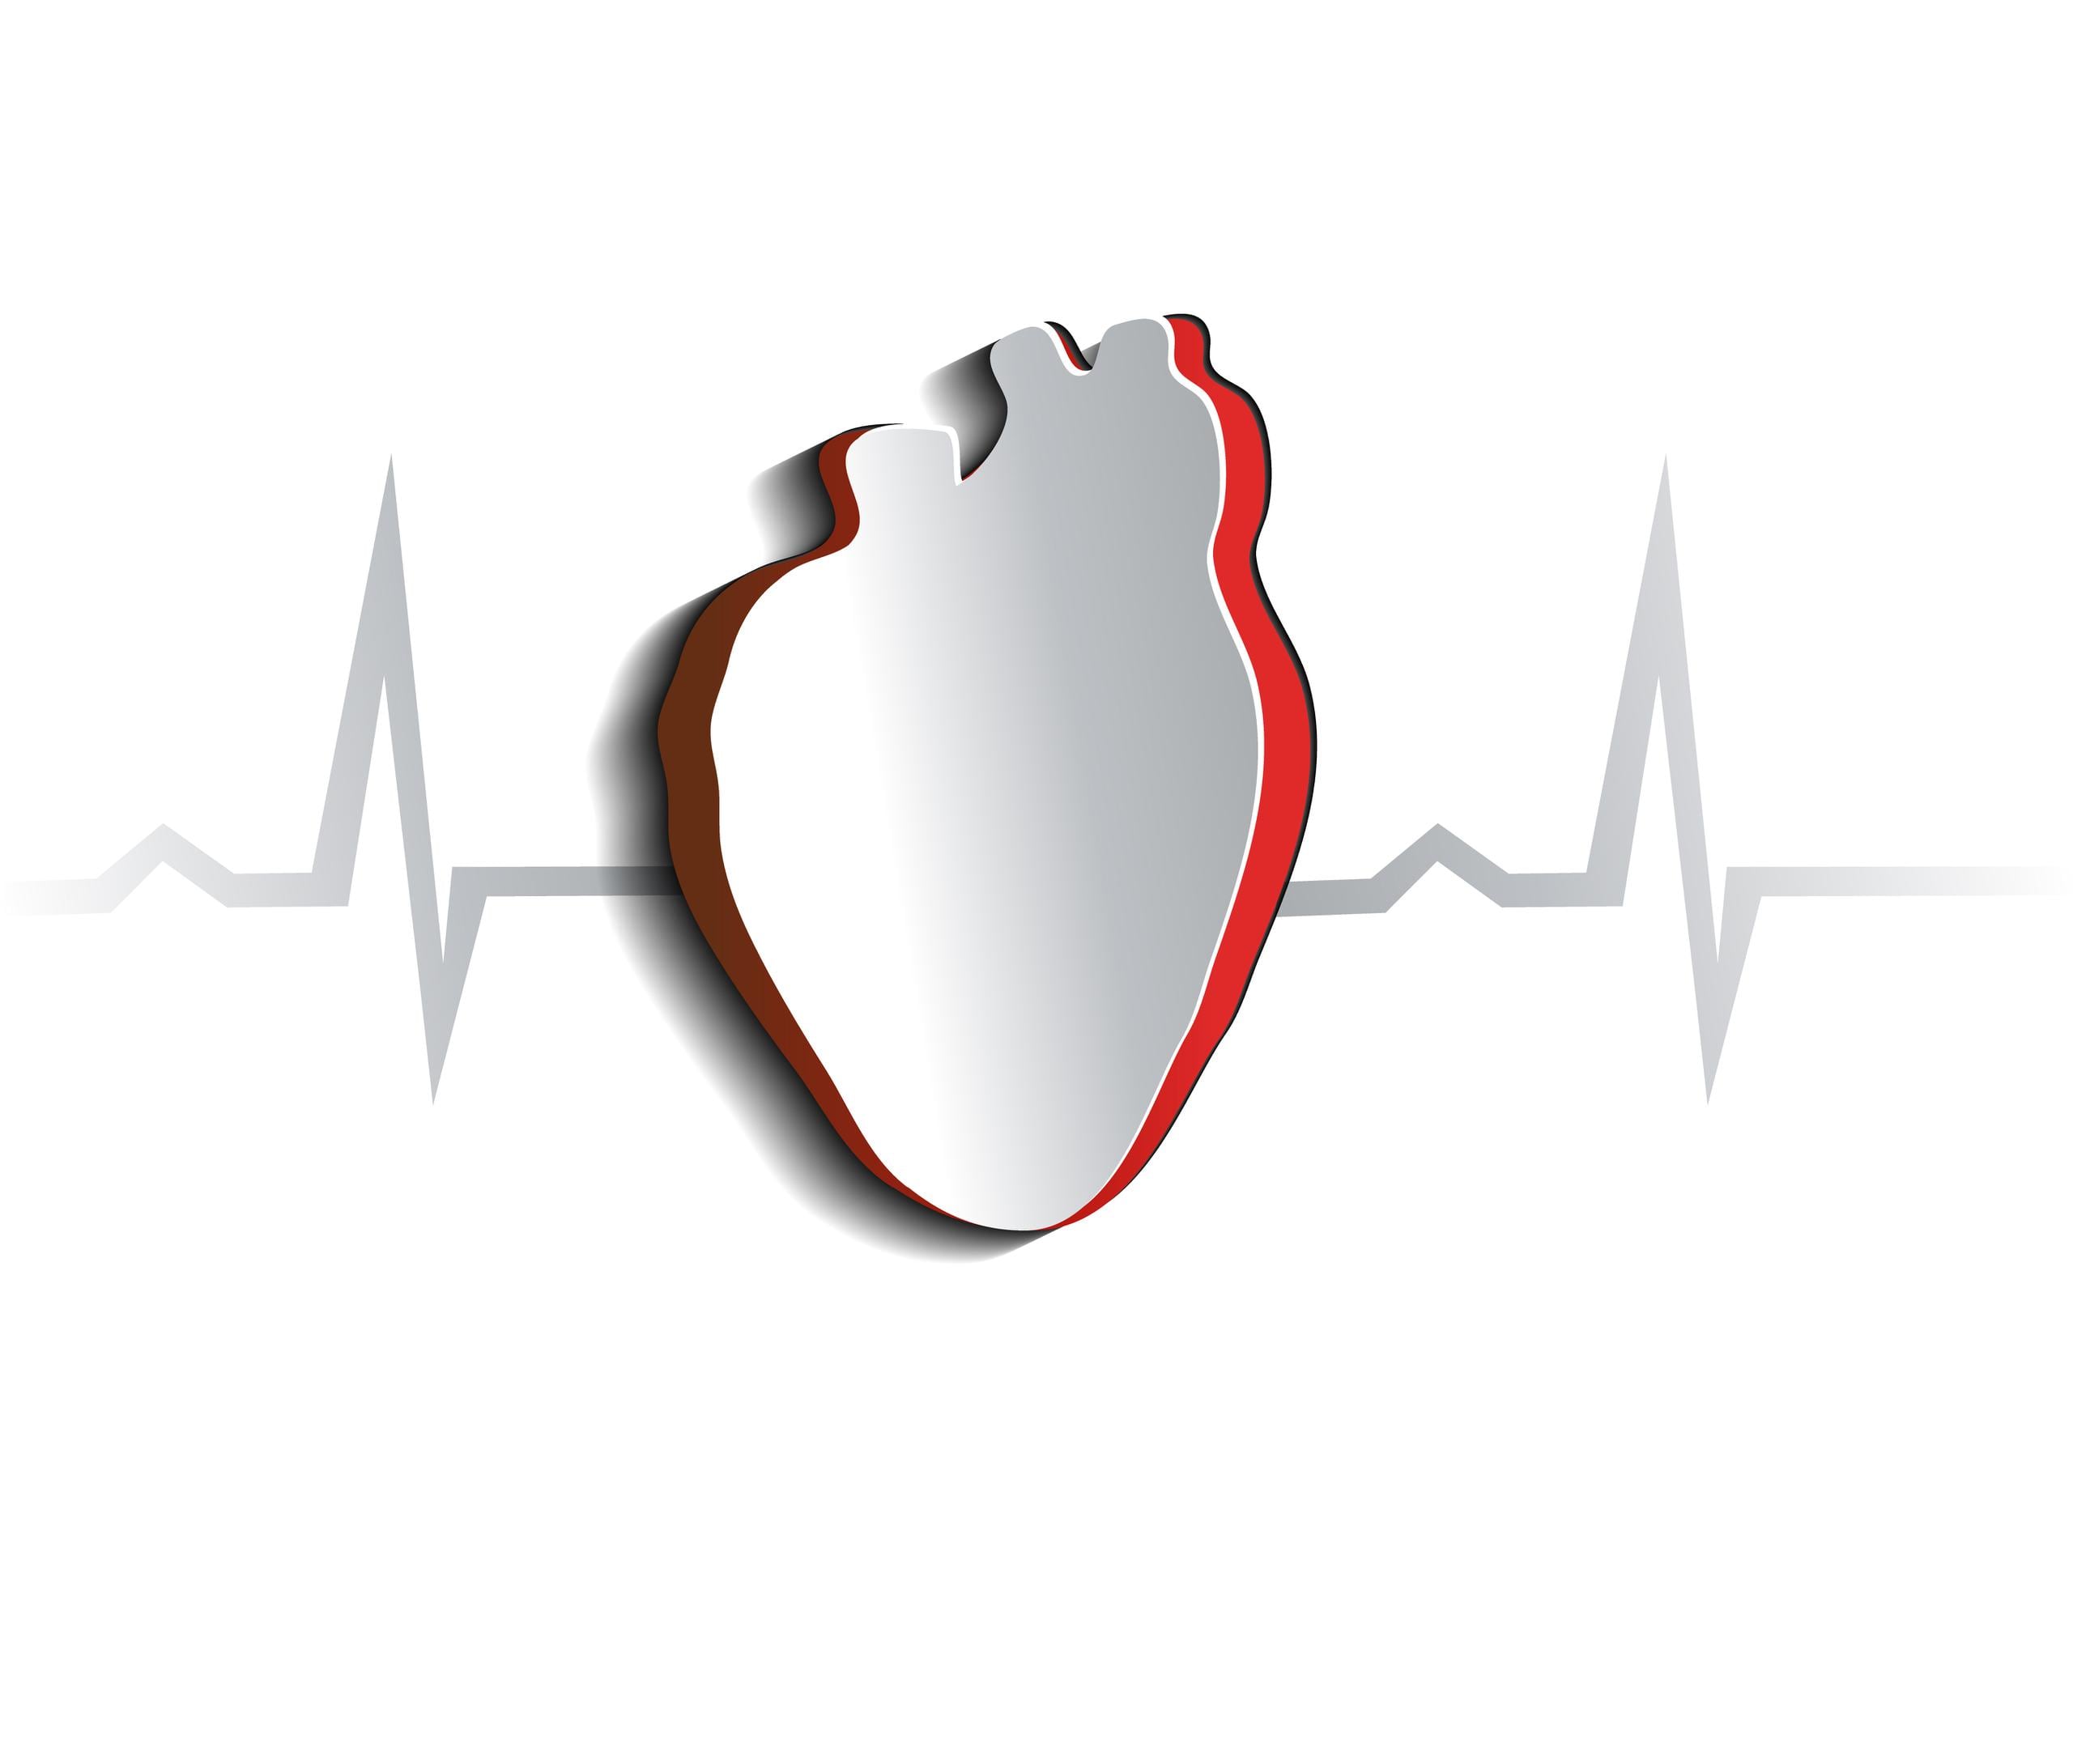 Las arritmias son unas alteraciones en el funcionamiento de la red eléctrica del corazón que modifican el ritmo cardíaco y tienen repercusión en la función de bombeo de este órgano, disminuyendo su eficacia.